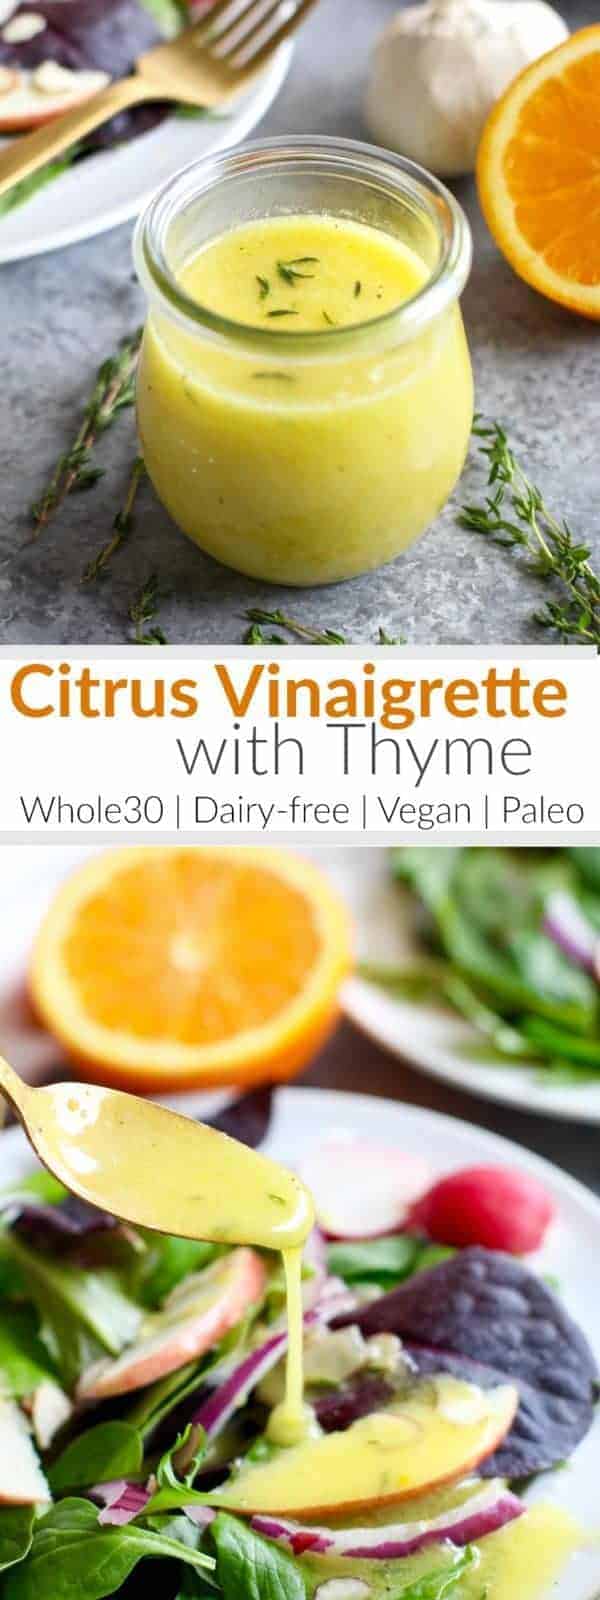 Pinterest image for Citrus Vinaigrette with Thyme